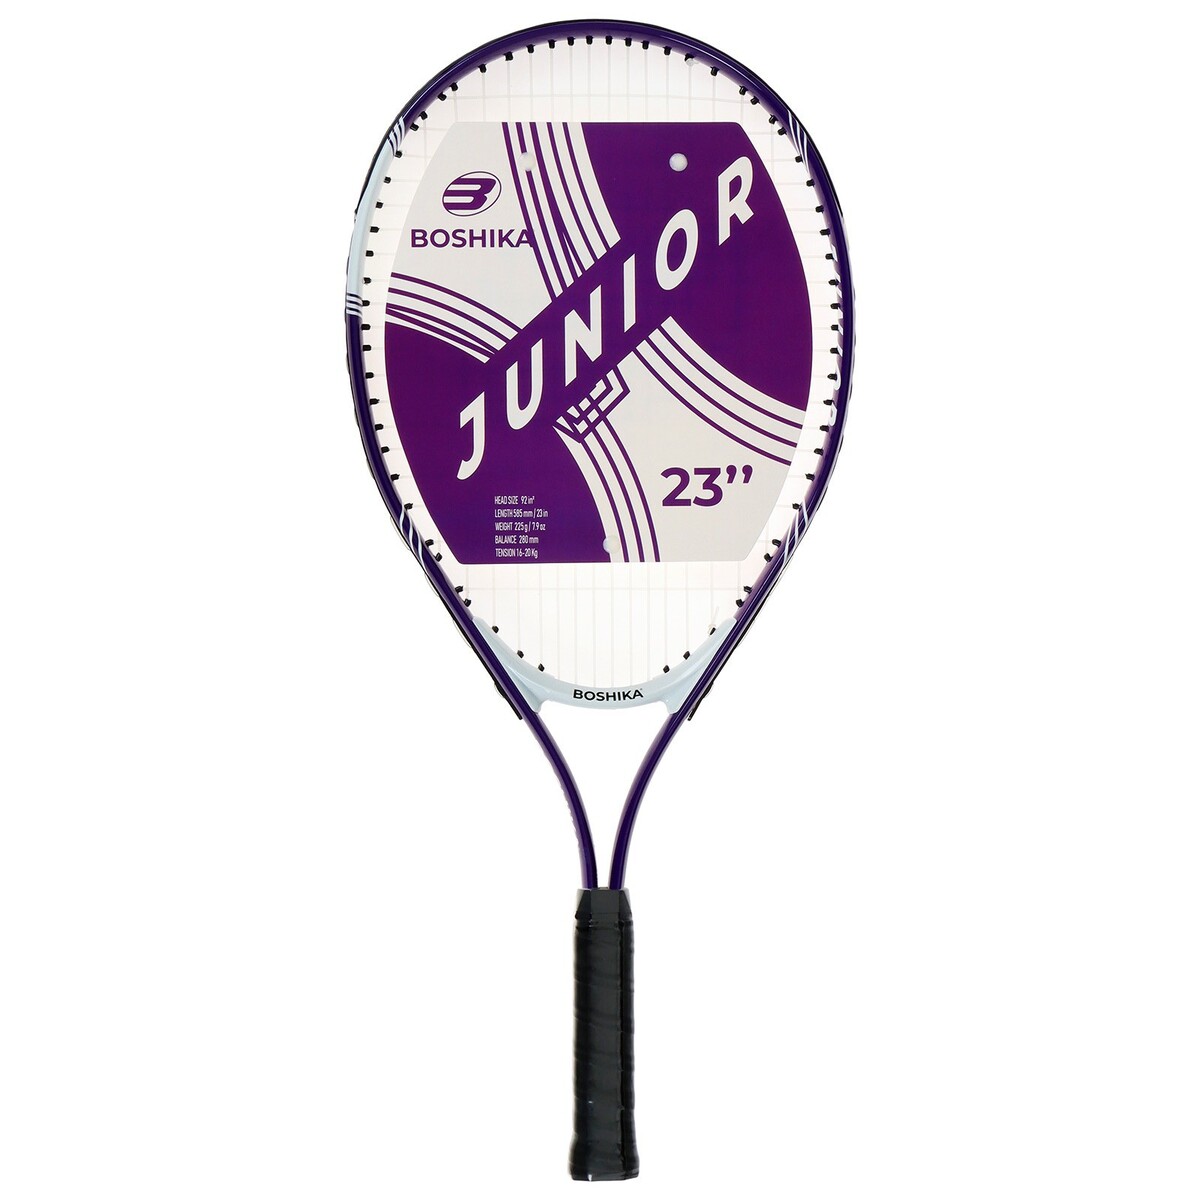 Ракетка для большого тенниса детская boshika junior, алюминий, 23'', цвет фиолетовый ракетка для настольного тенниса boshika training 1 звезда